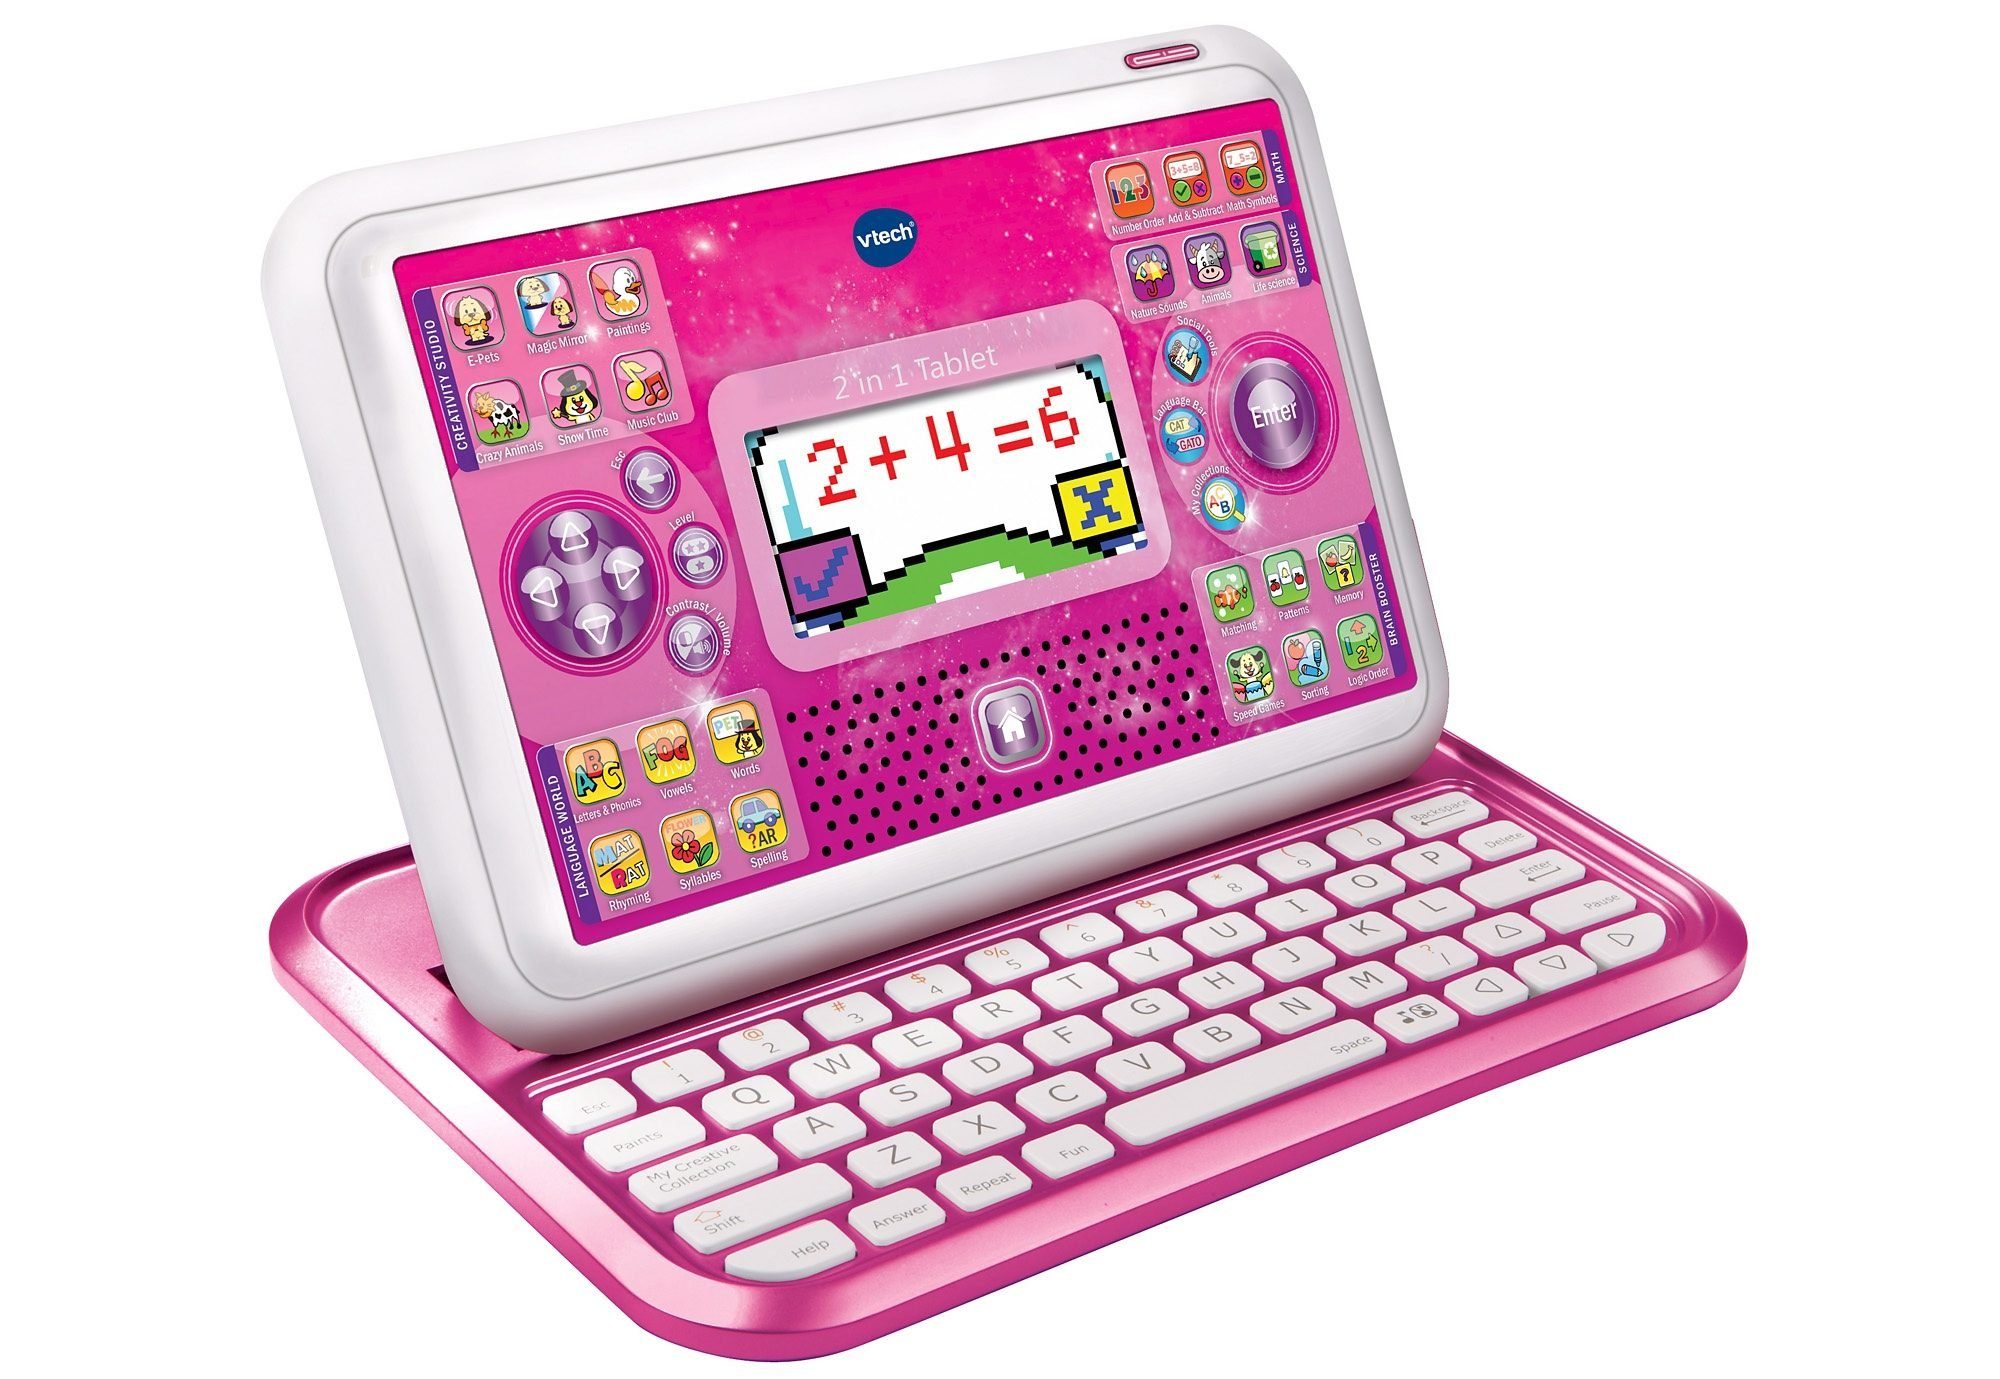 26 auf erscheint School & beim Vtech® in 2 Aufschieben) Tablet, QWERTZ-Tastatur Kindercomputer Go, 1 Buchstabentasten (Tastatur